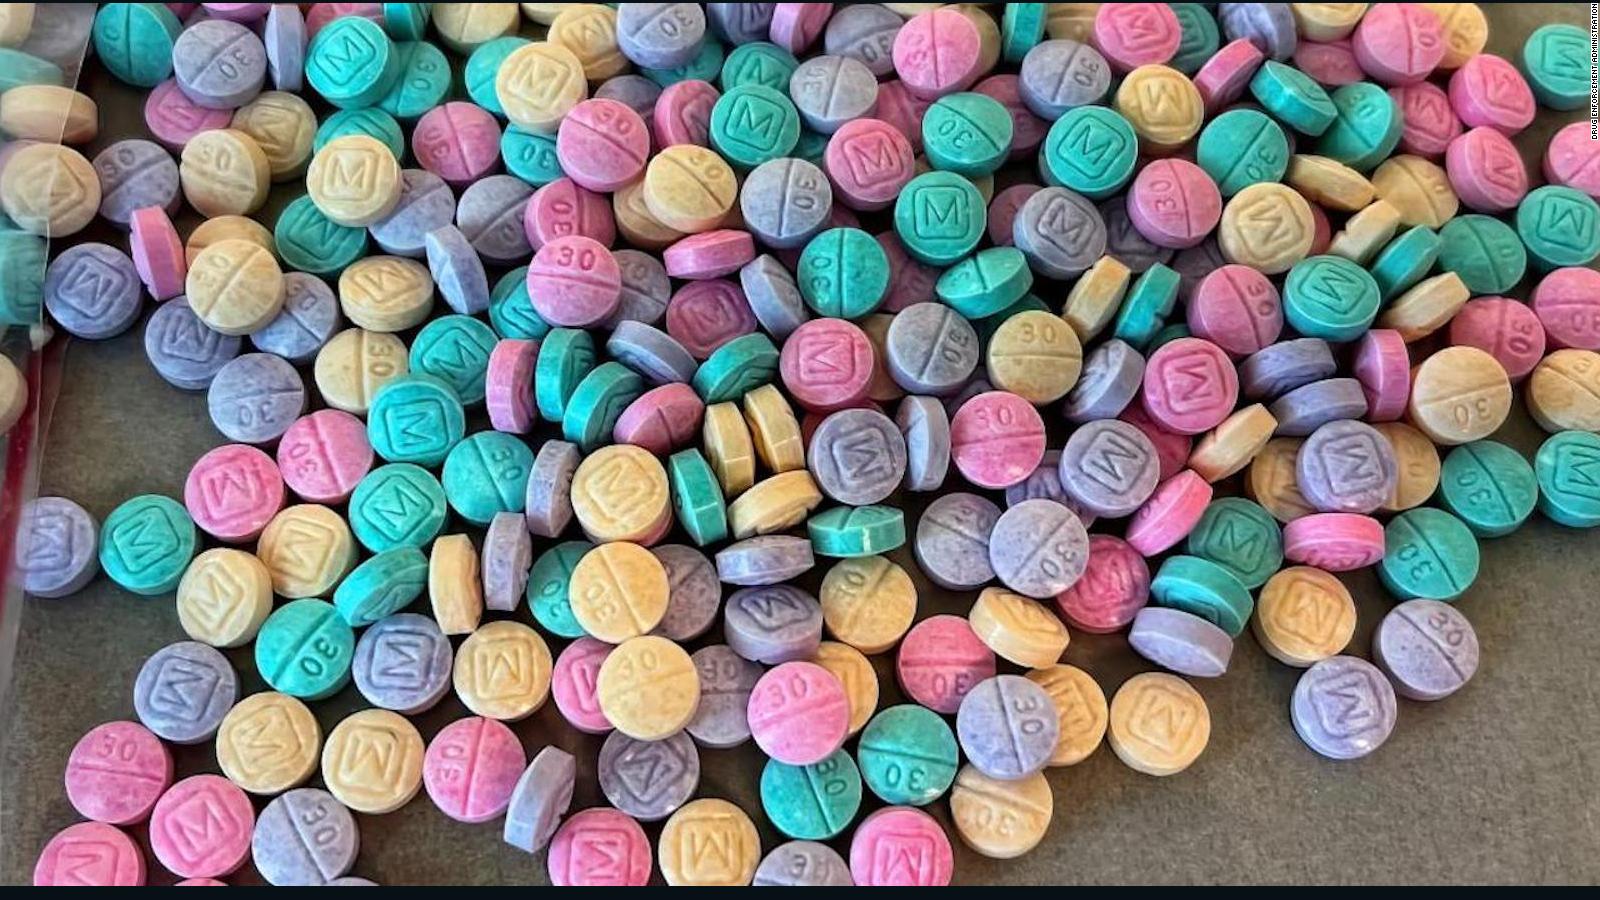 No son caramelos: la DEA advierte sobre el uso de fentanilo de colores  brillantes